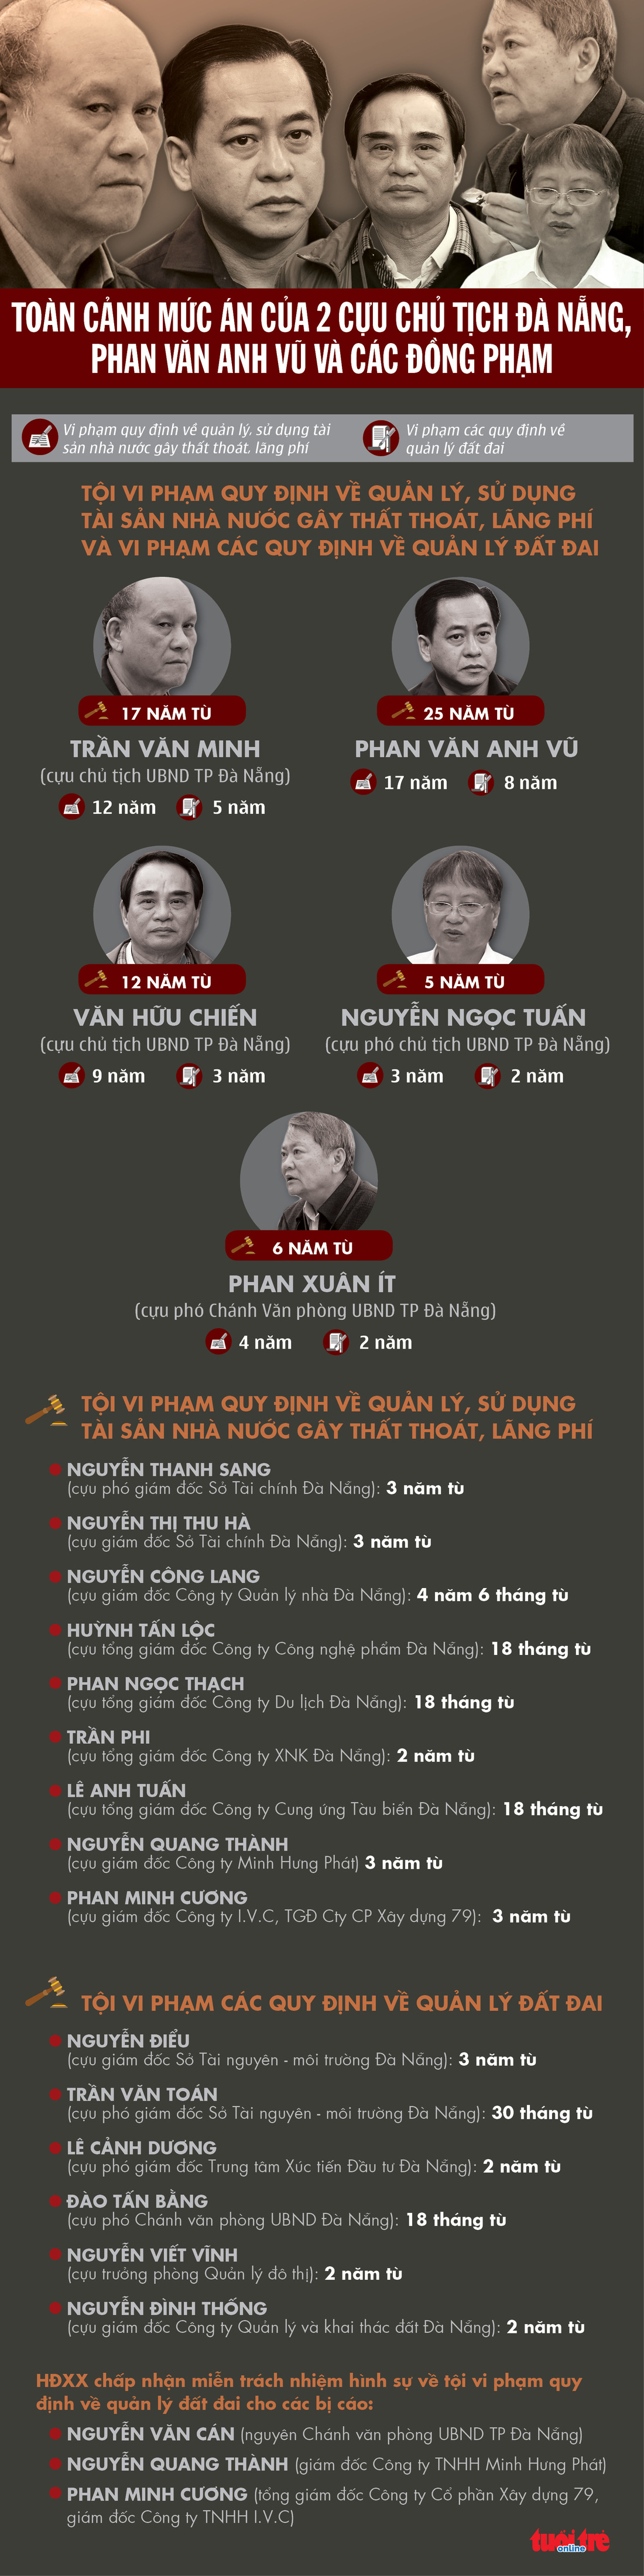 Mức án của hai cựu chủ tịch Đà Nẵng, Phan Văn Anh Vũ và đồng phạm vụ thâu tóm đất công - Ảnh 1.